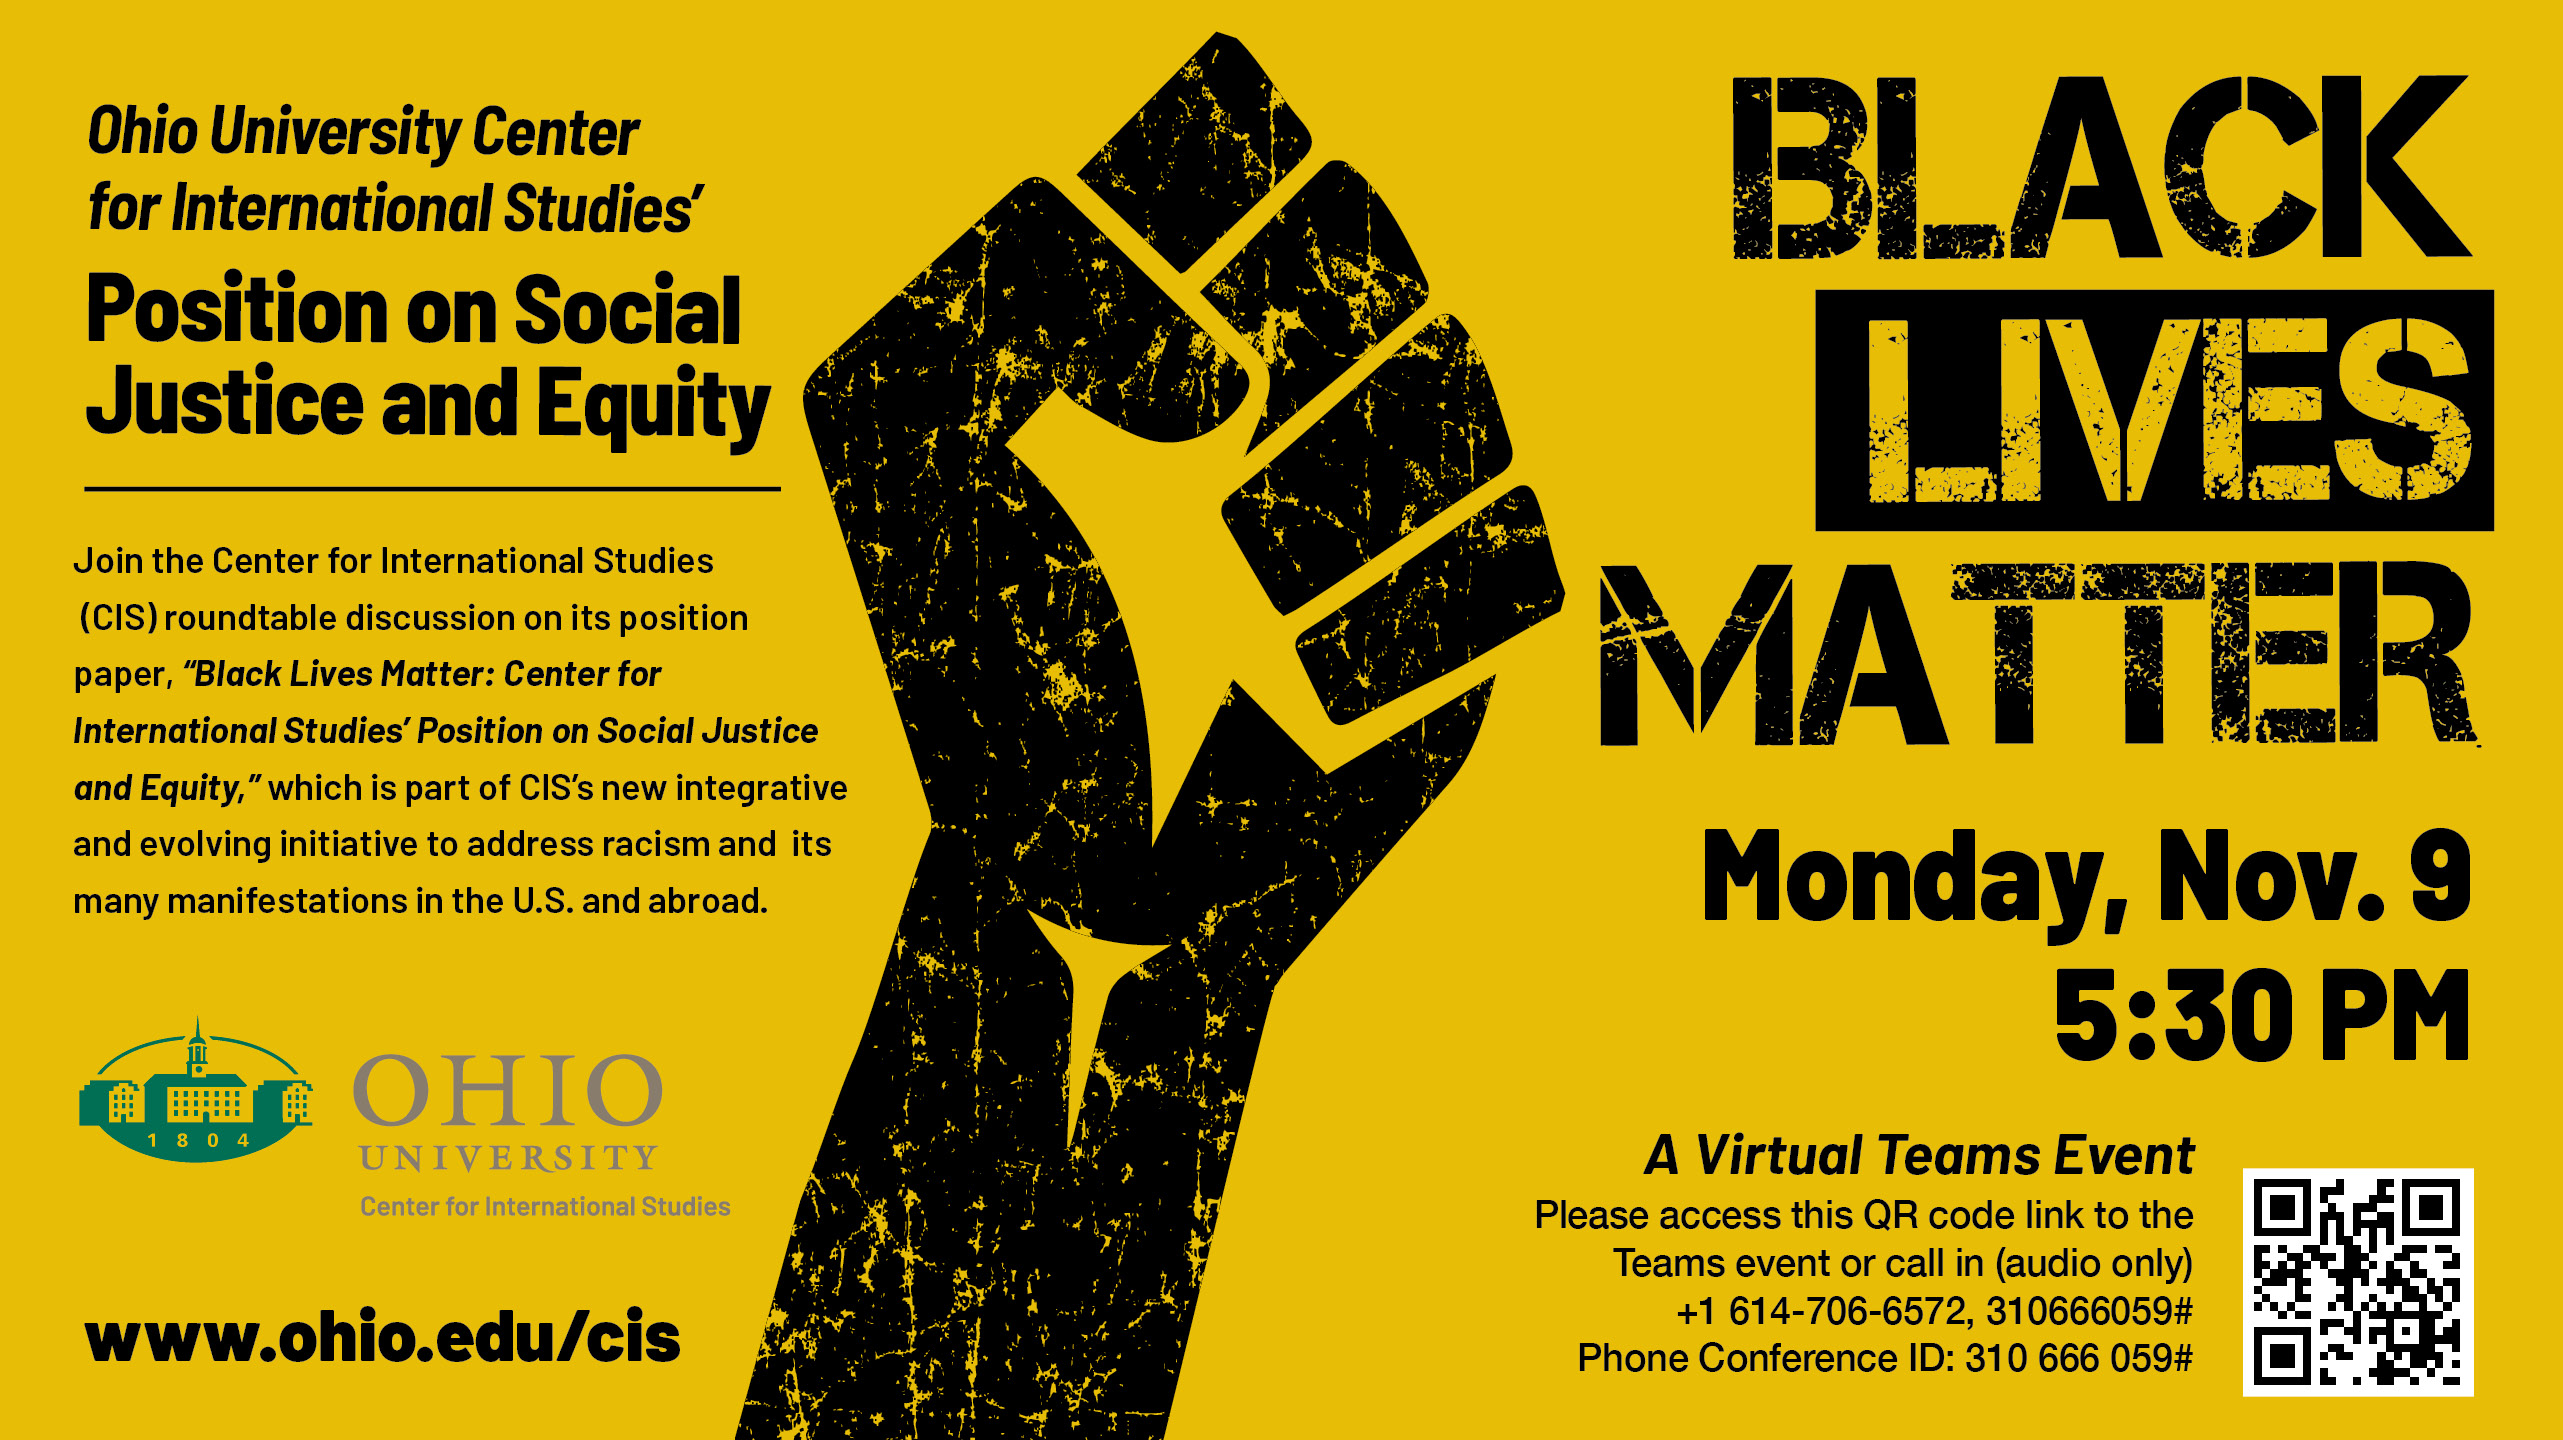 Black Lives Matter event promo image